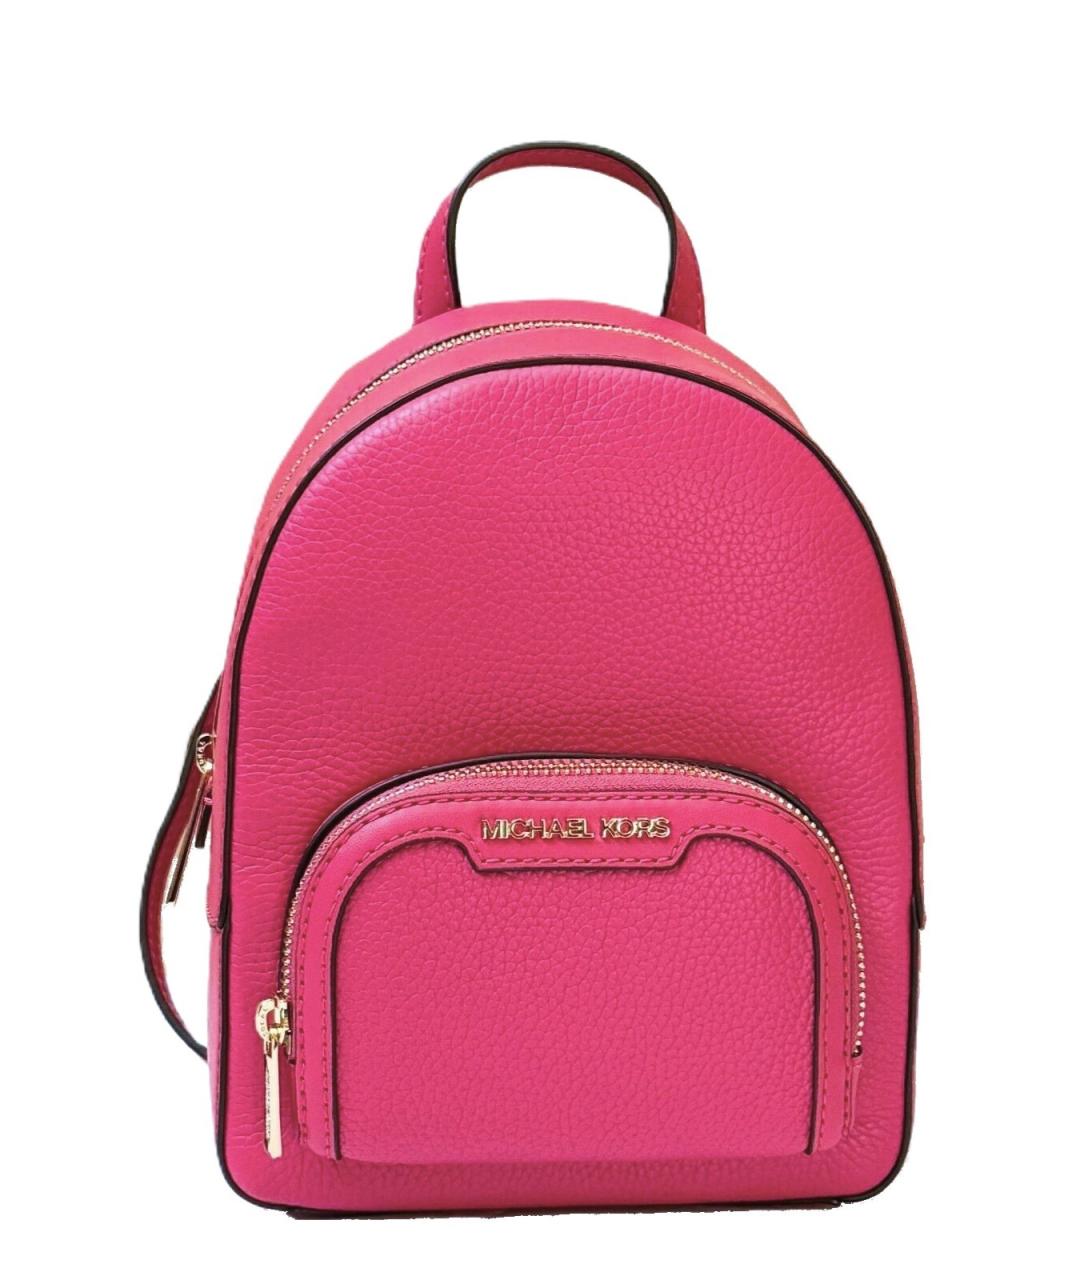 MICHAEL KORS Розовый кожаный рюкзак, фото 1